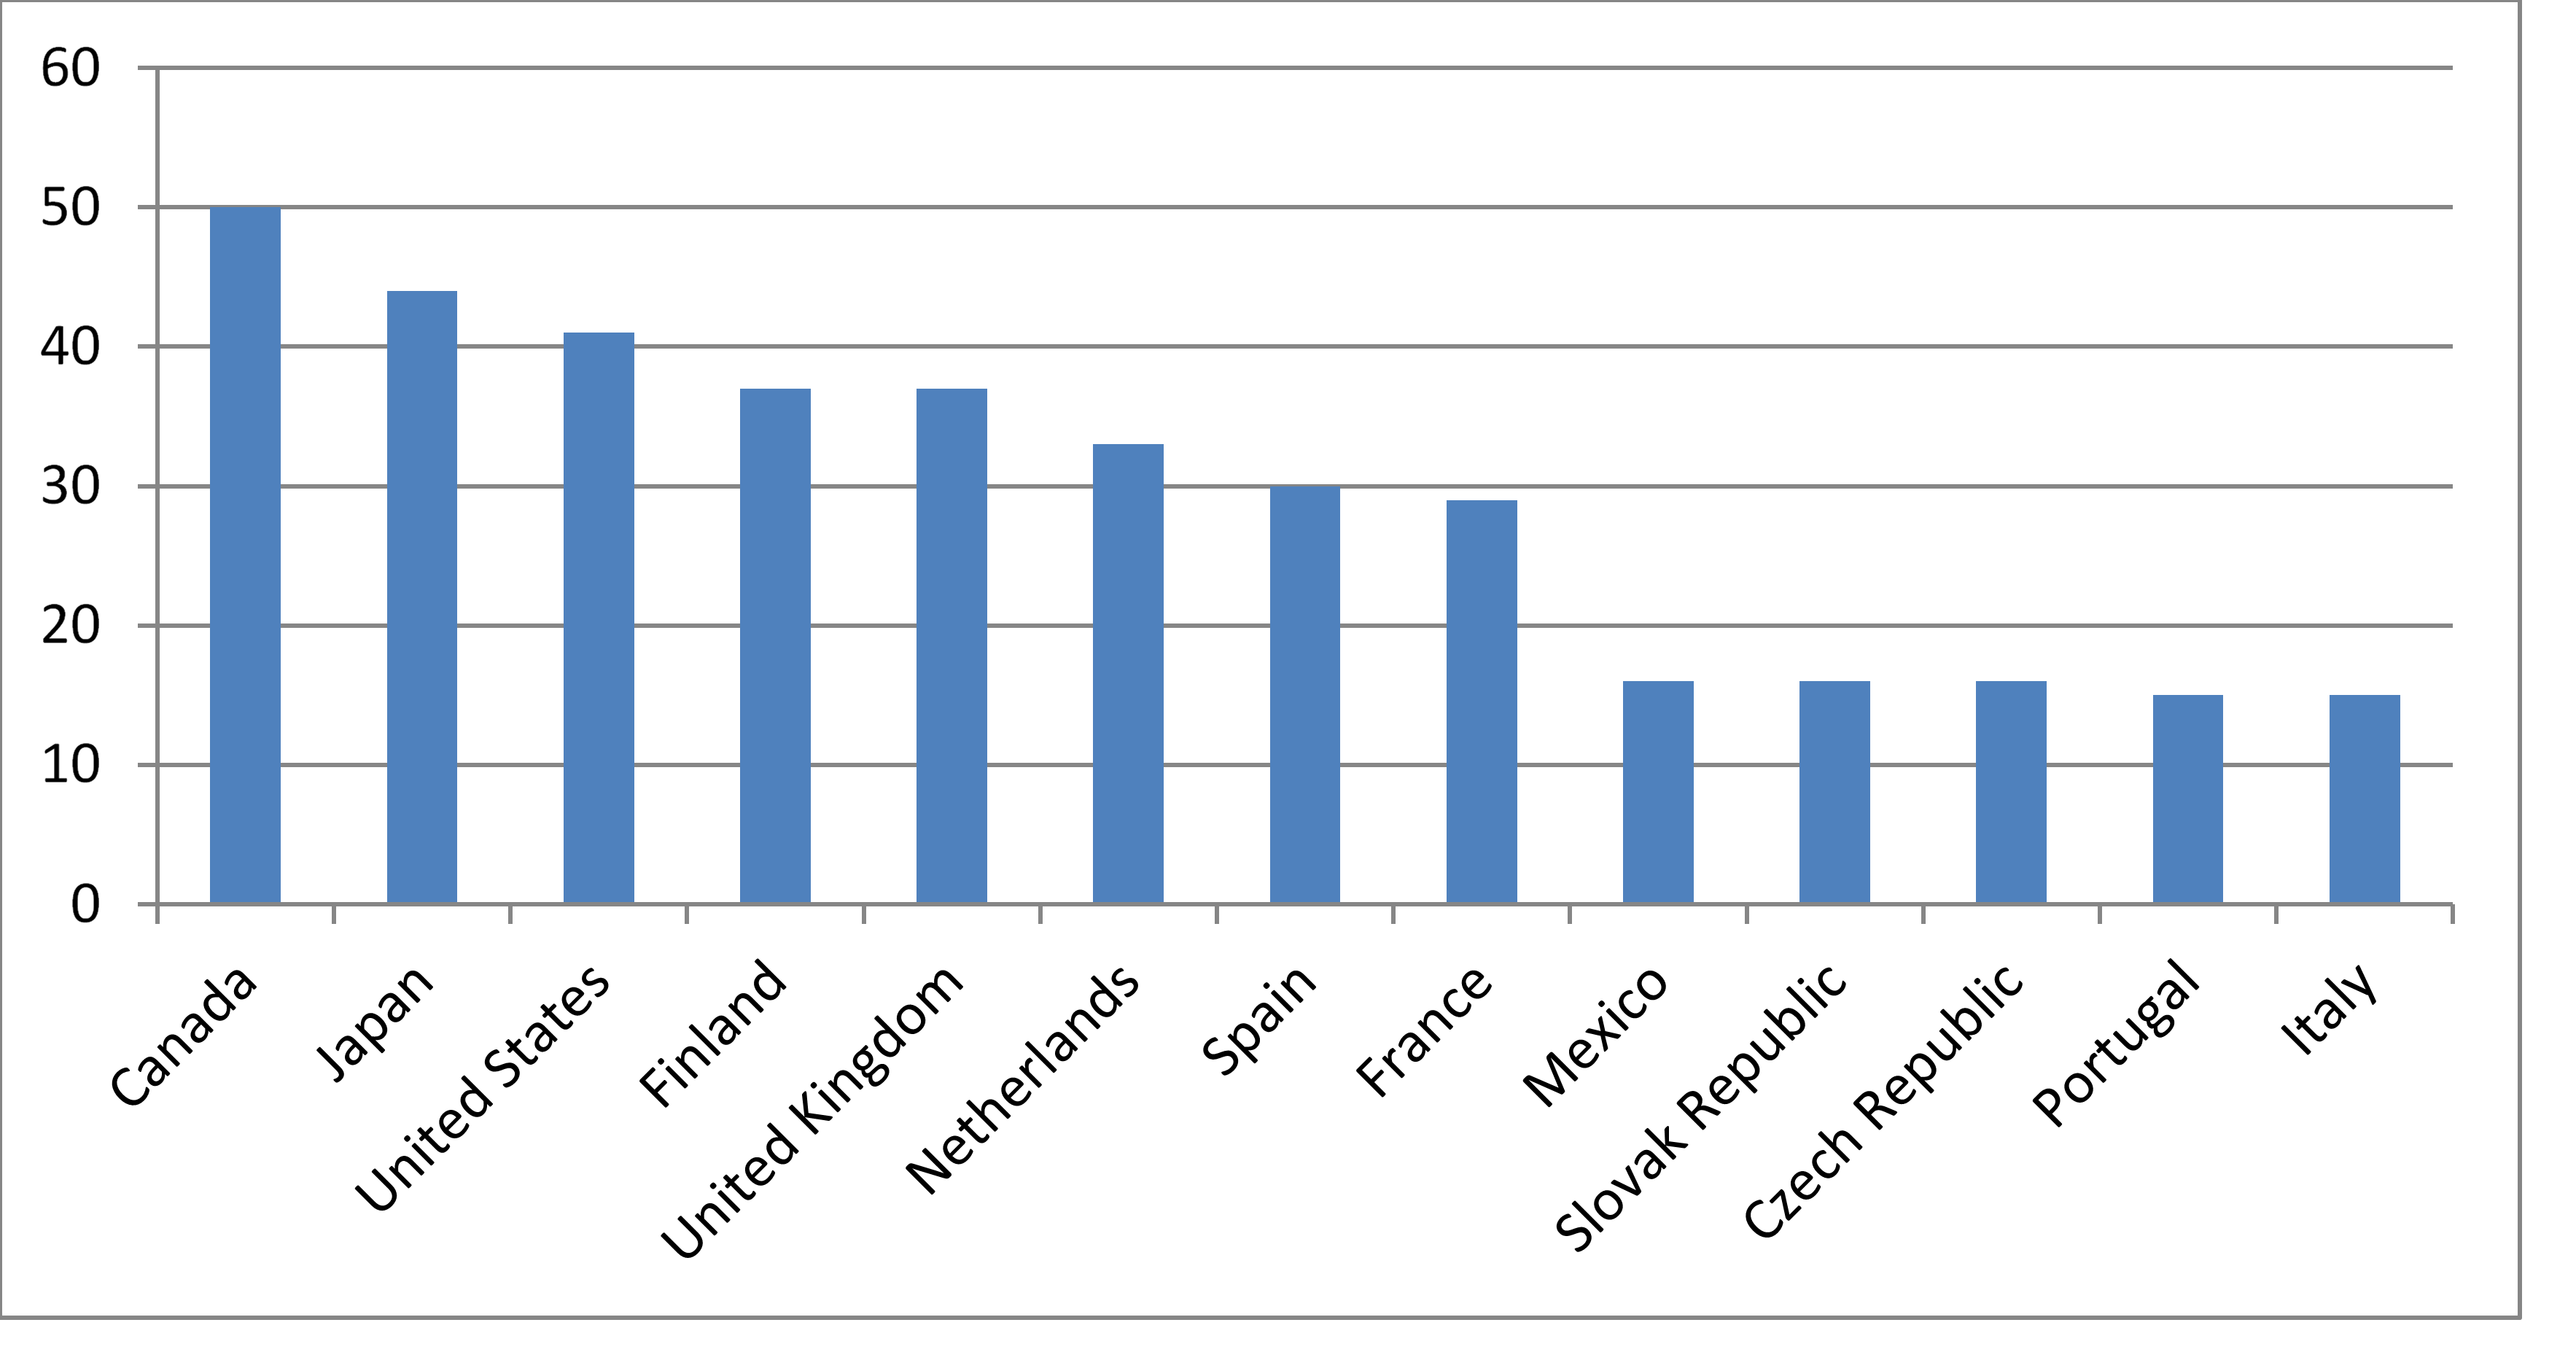  Gráfico 1. Personas de 25 a 64 años con titulaciones universitarias países de la OCDE (2009)